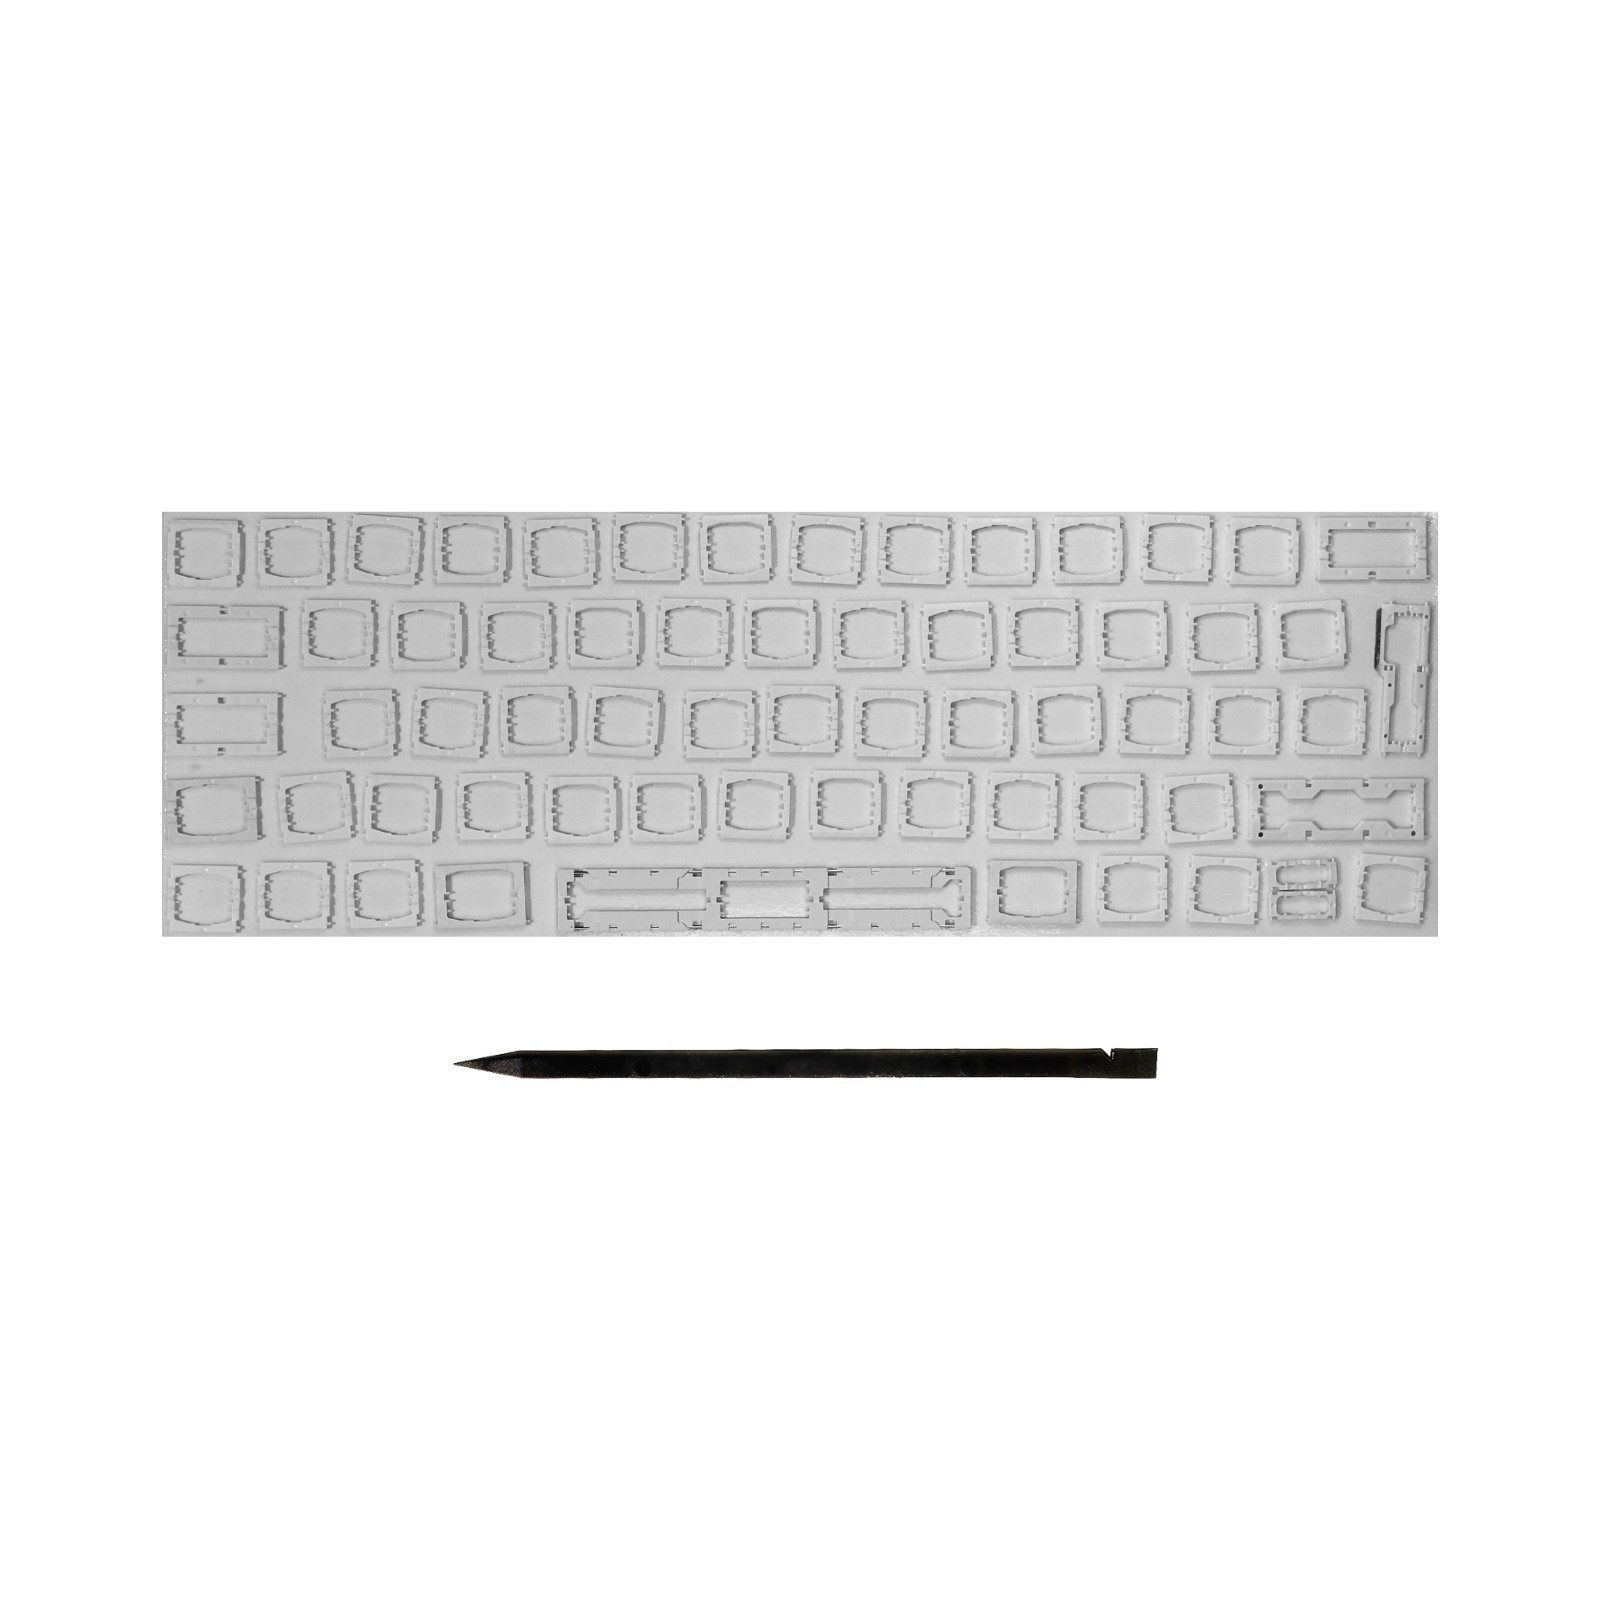 MY LAPTOP SETUP Tastatur-Tastenkappen Scharniere für MacBook Deutsches Layout ISO Clip A1989/A1990/A2159